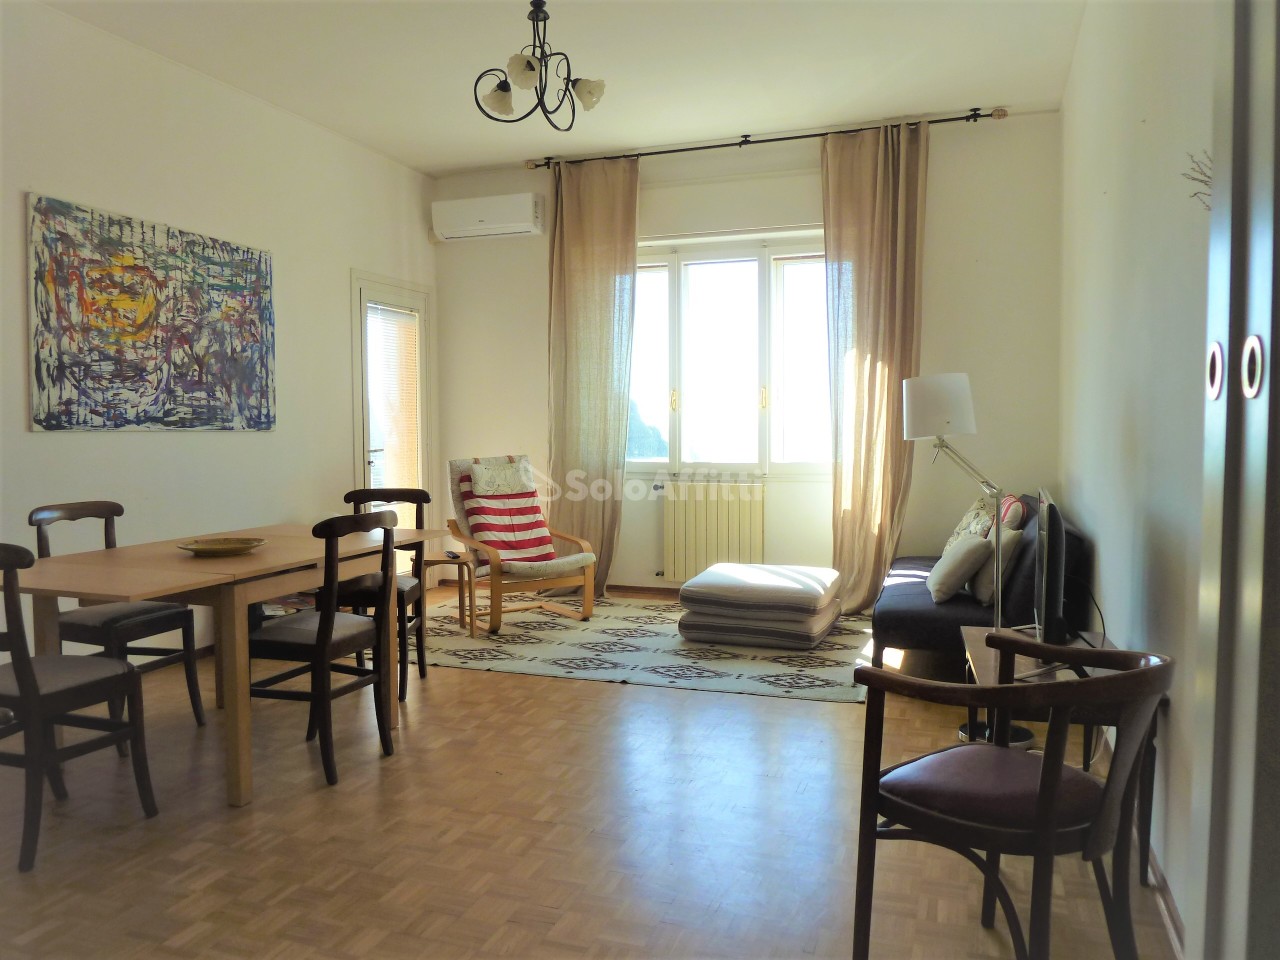 Appartamento in affitto a SanRemo, 7 locali, prezzo € 1.000 | PortaleAgenzieImmobiliari.it